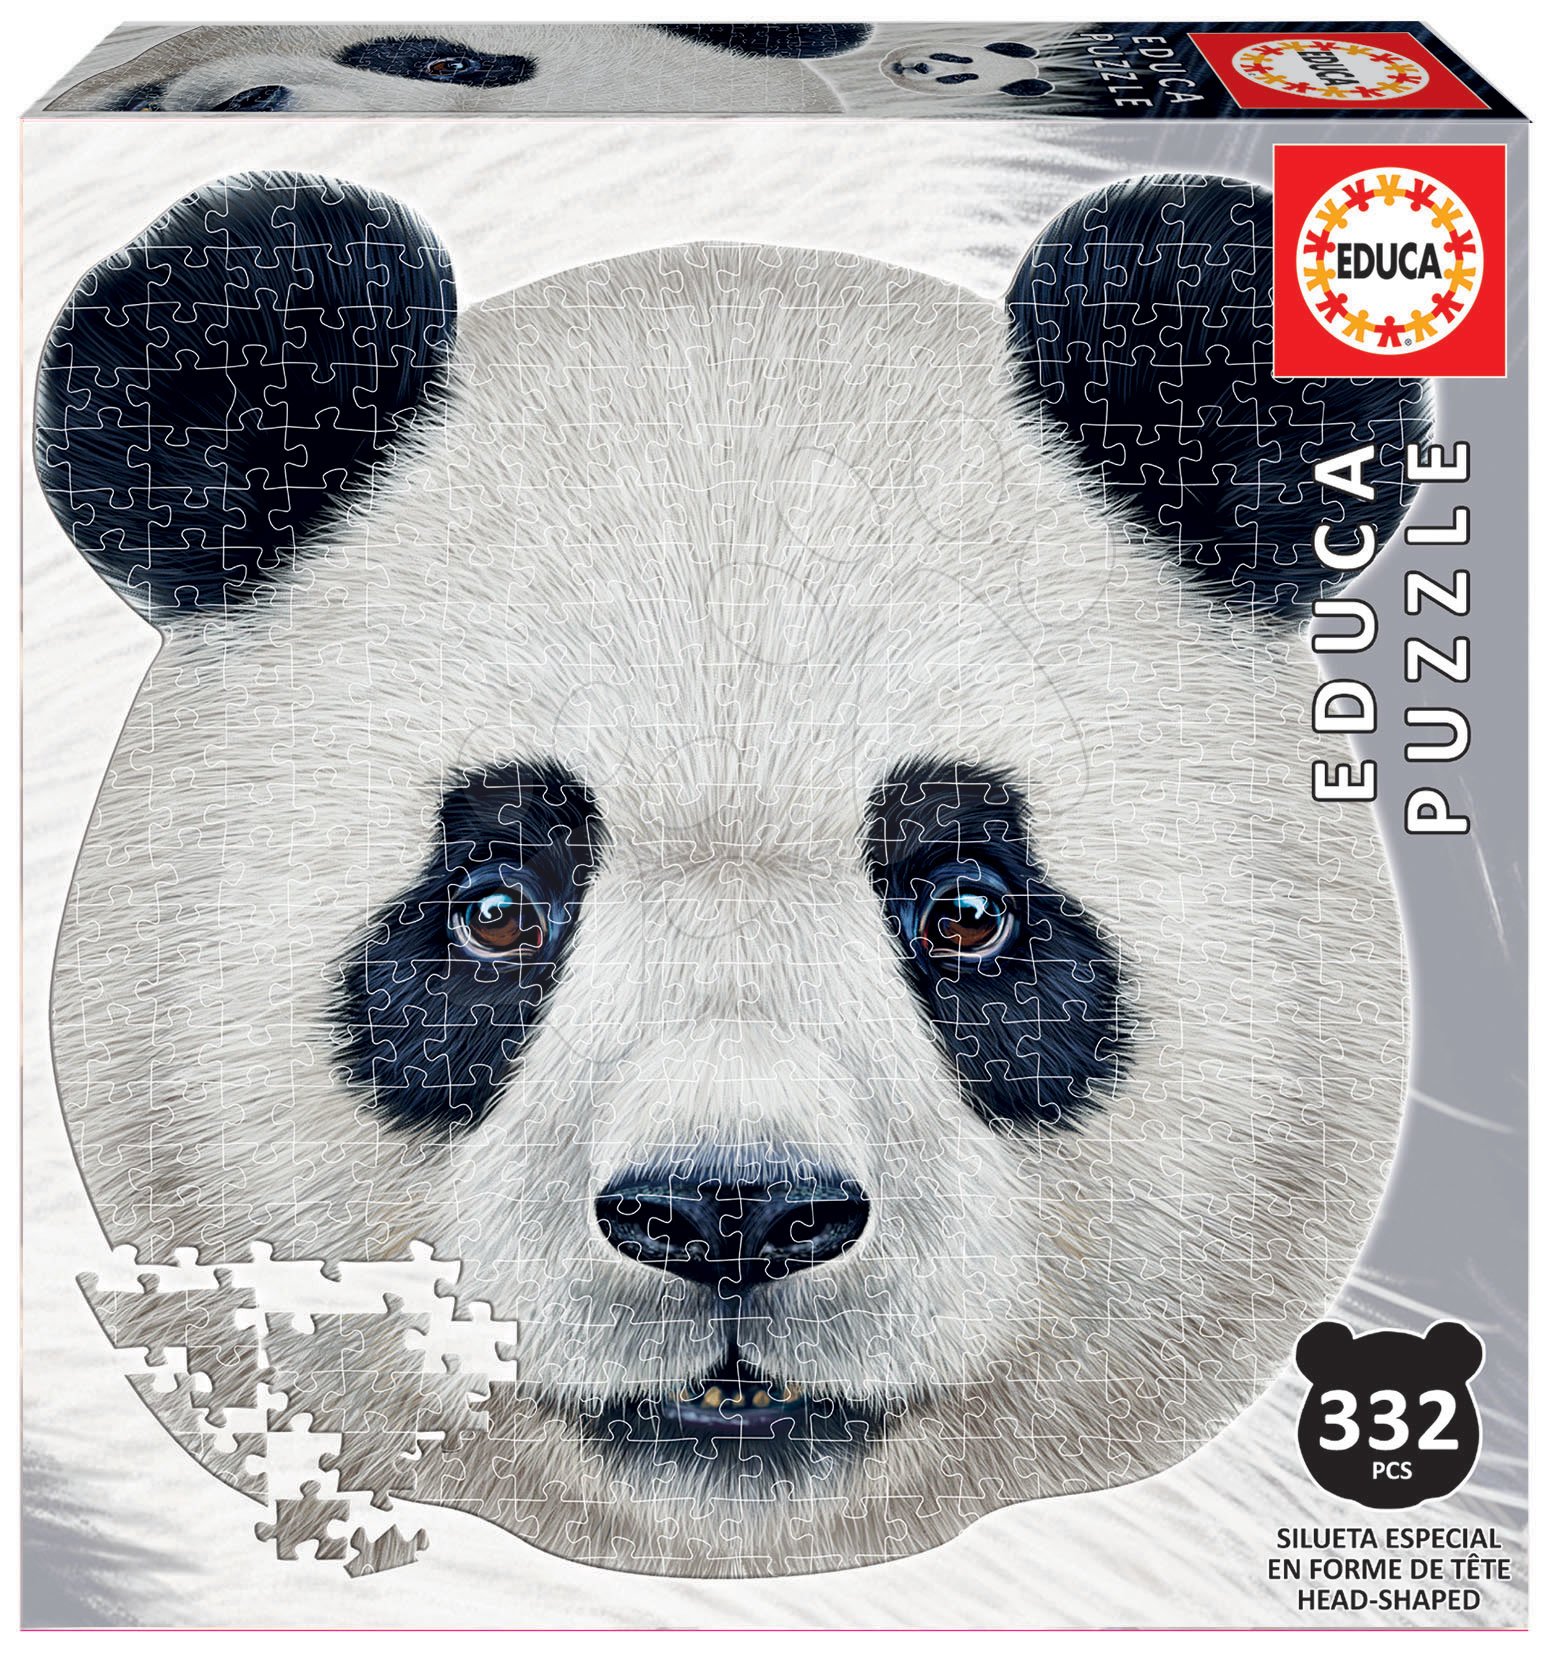 500 darabos puzzle - Puzzle Panda face shape Educa 332 darabos és Fix ragasztó 11 évtől